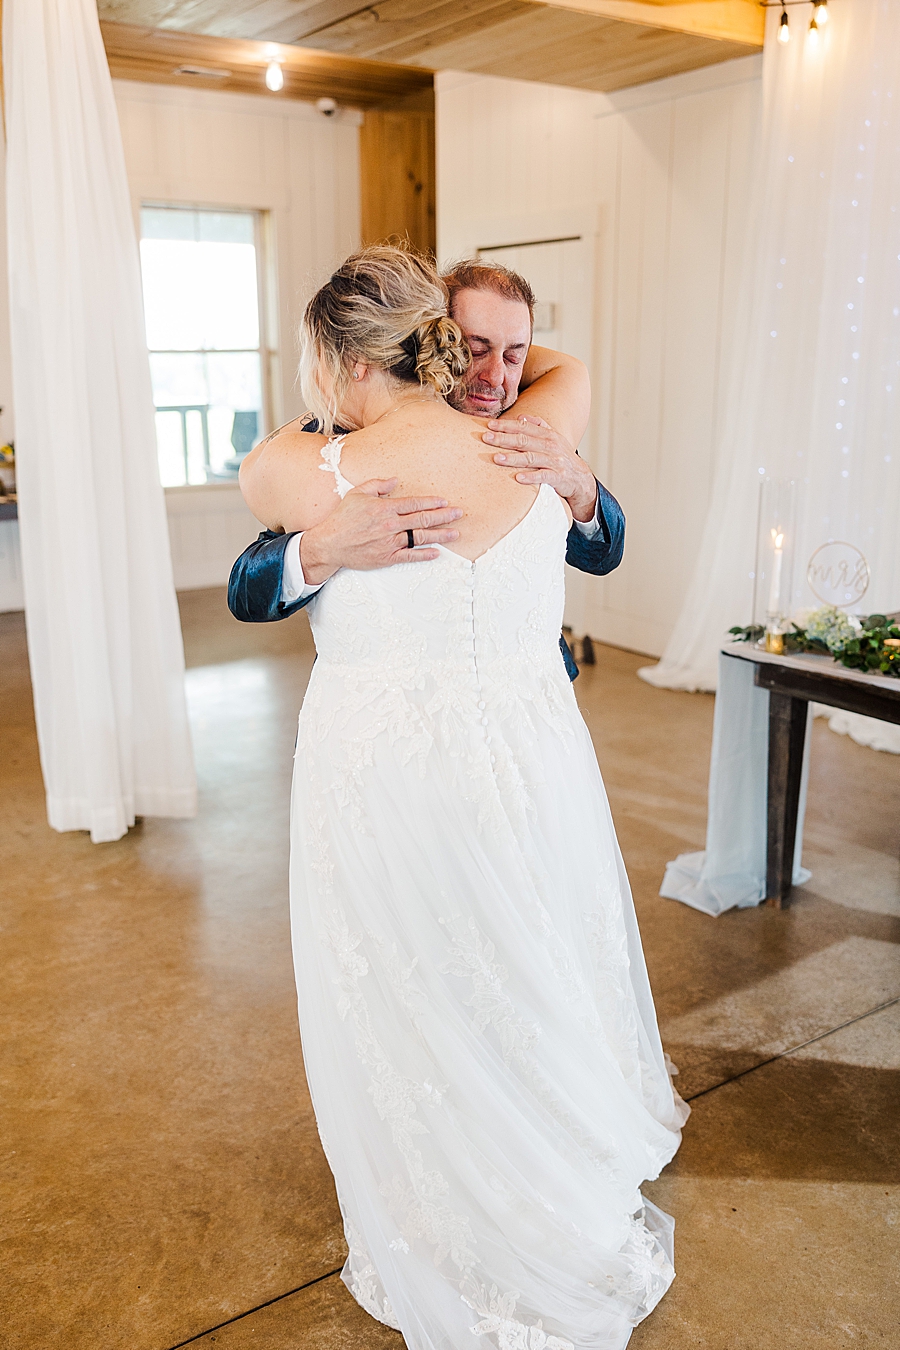 Bride and dad hug at wedding by Amanda May Photos